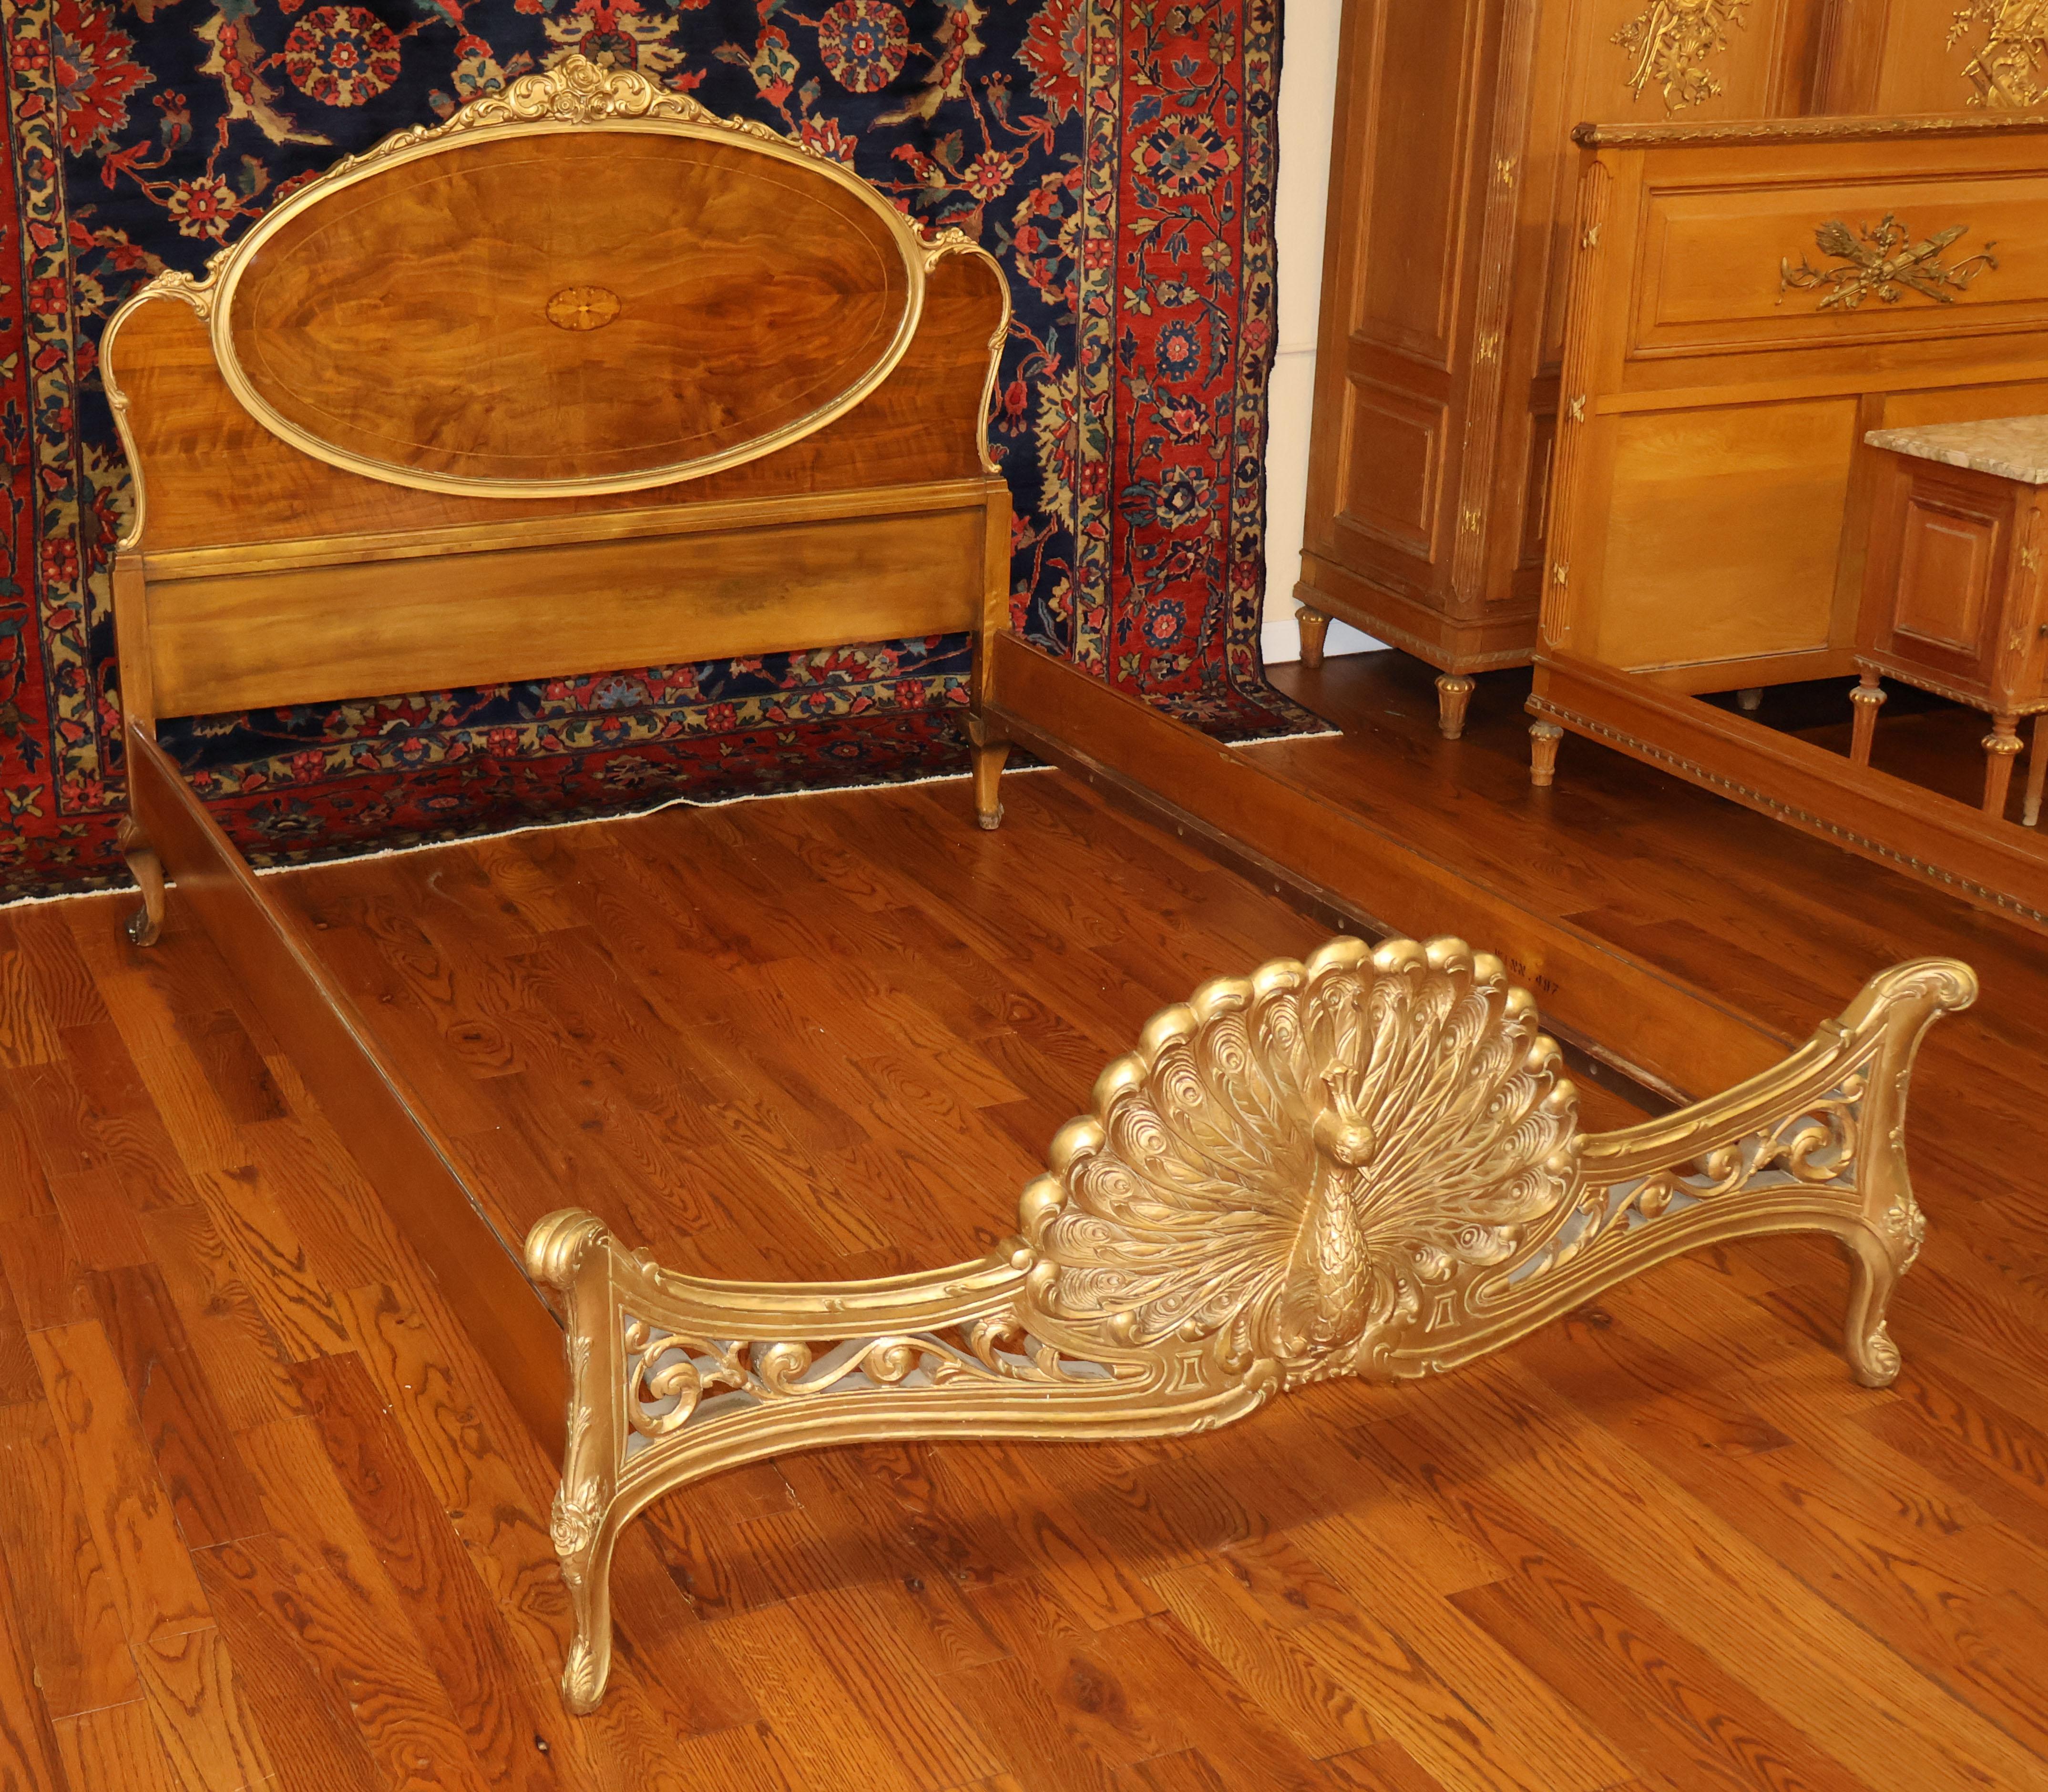 Magnifique lit complet en bois incrusté de style Louis XVI, sculpté d'un paon

Dimensions : 56.5